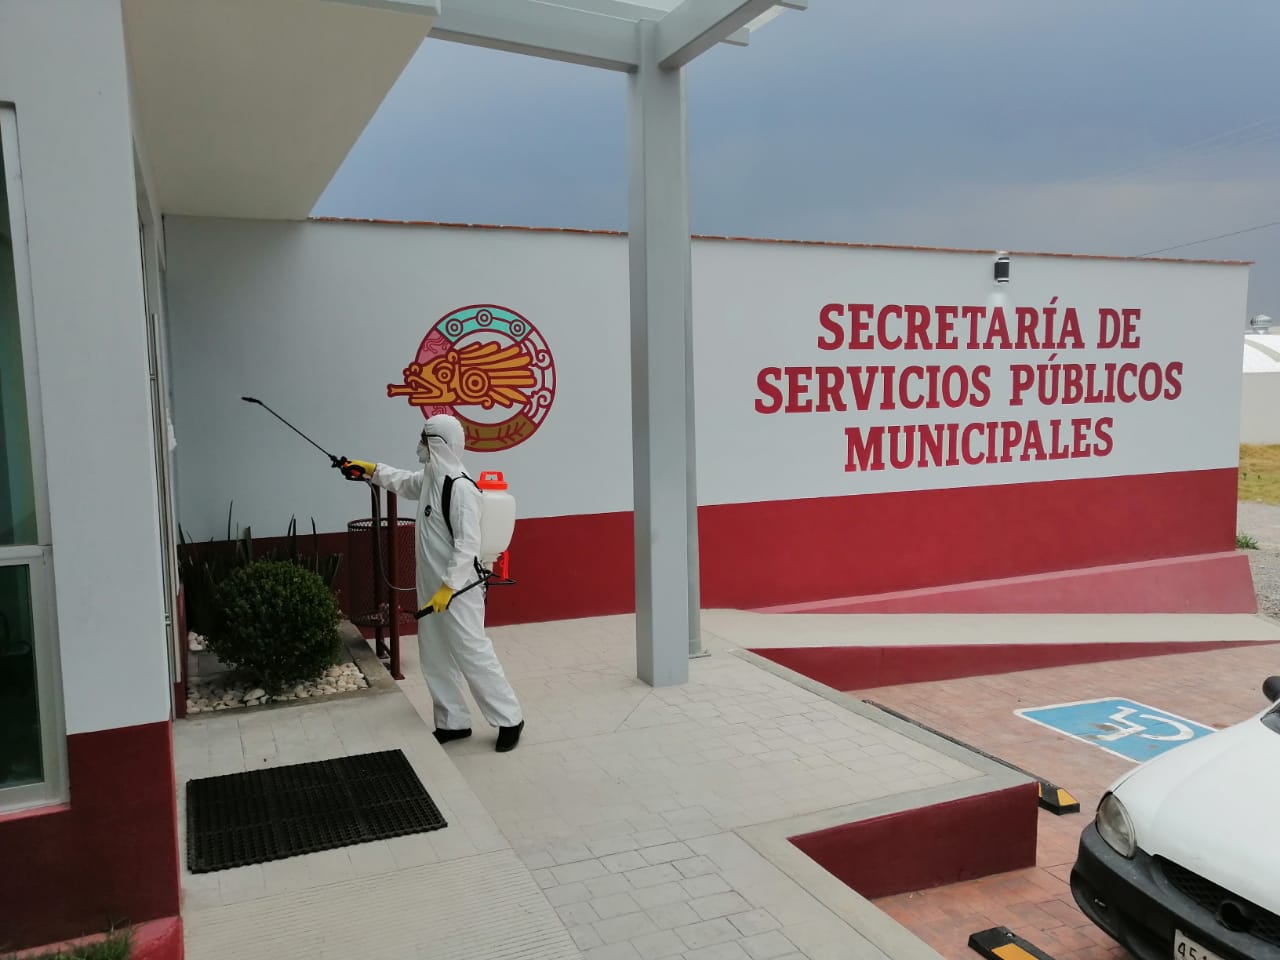 En San Andrés Cholula, el ayuntamiento sanitiza las instalaciones de Seguridad y Servicios públicos